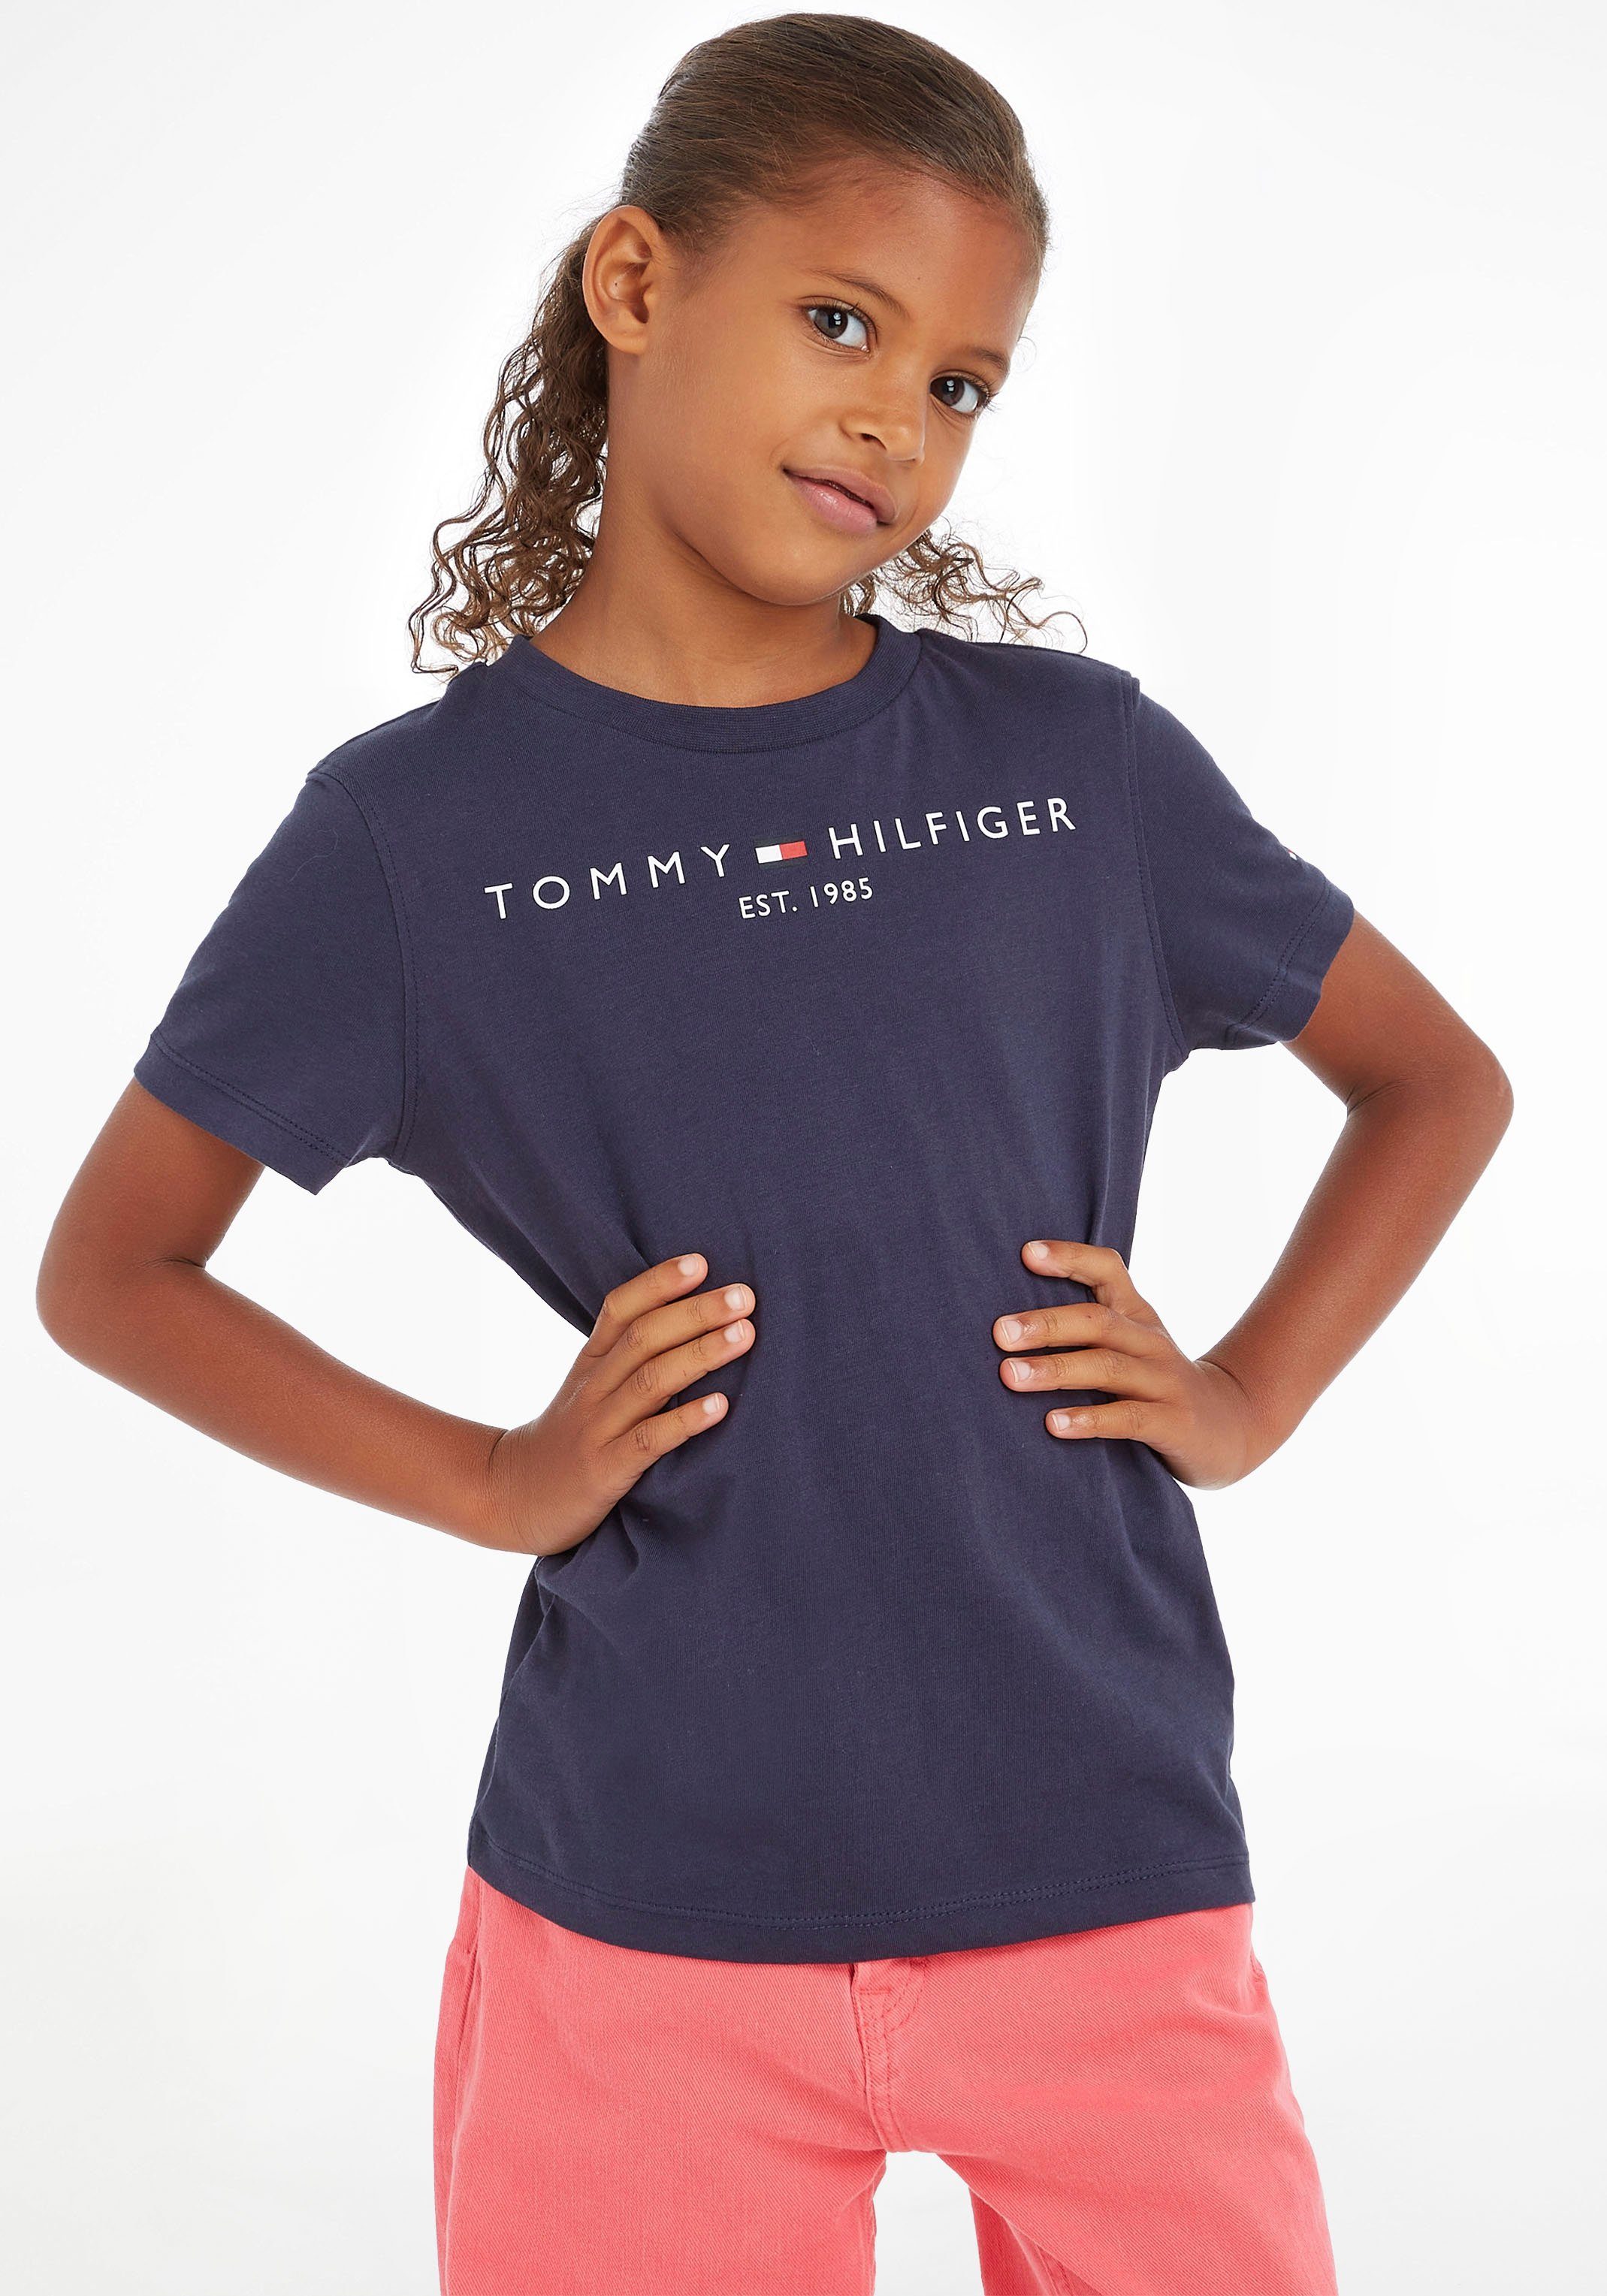 Tommy Hilfiger T-Shirt ESSENTIAL TEE Jungen Kids und Junior Kinder Mädchen MiniMe,für